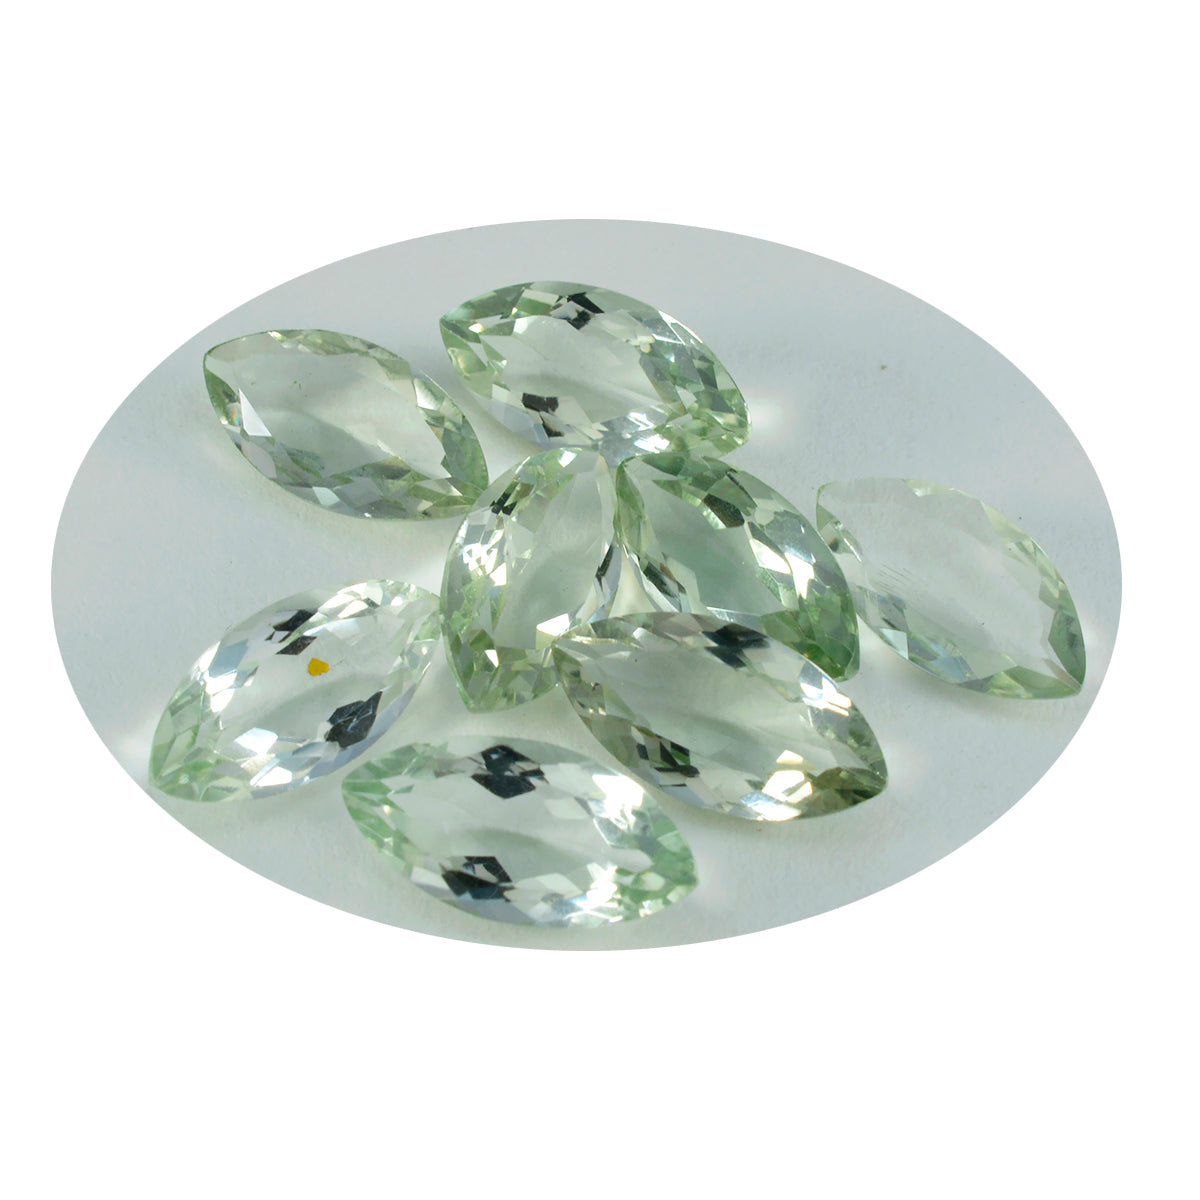 Riyogems 1pc améthyste verte facettée 7x14mm forme marquise qualité étonnante gemme en vrac